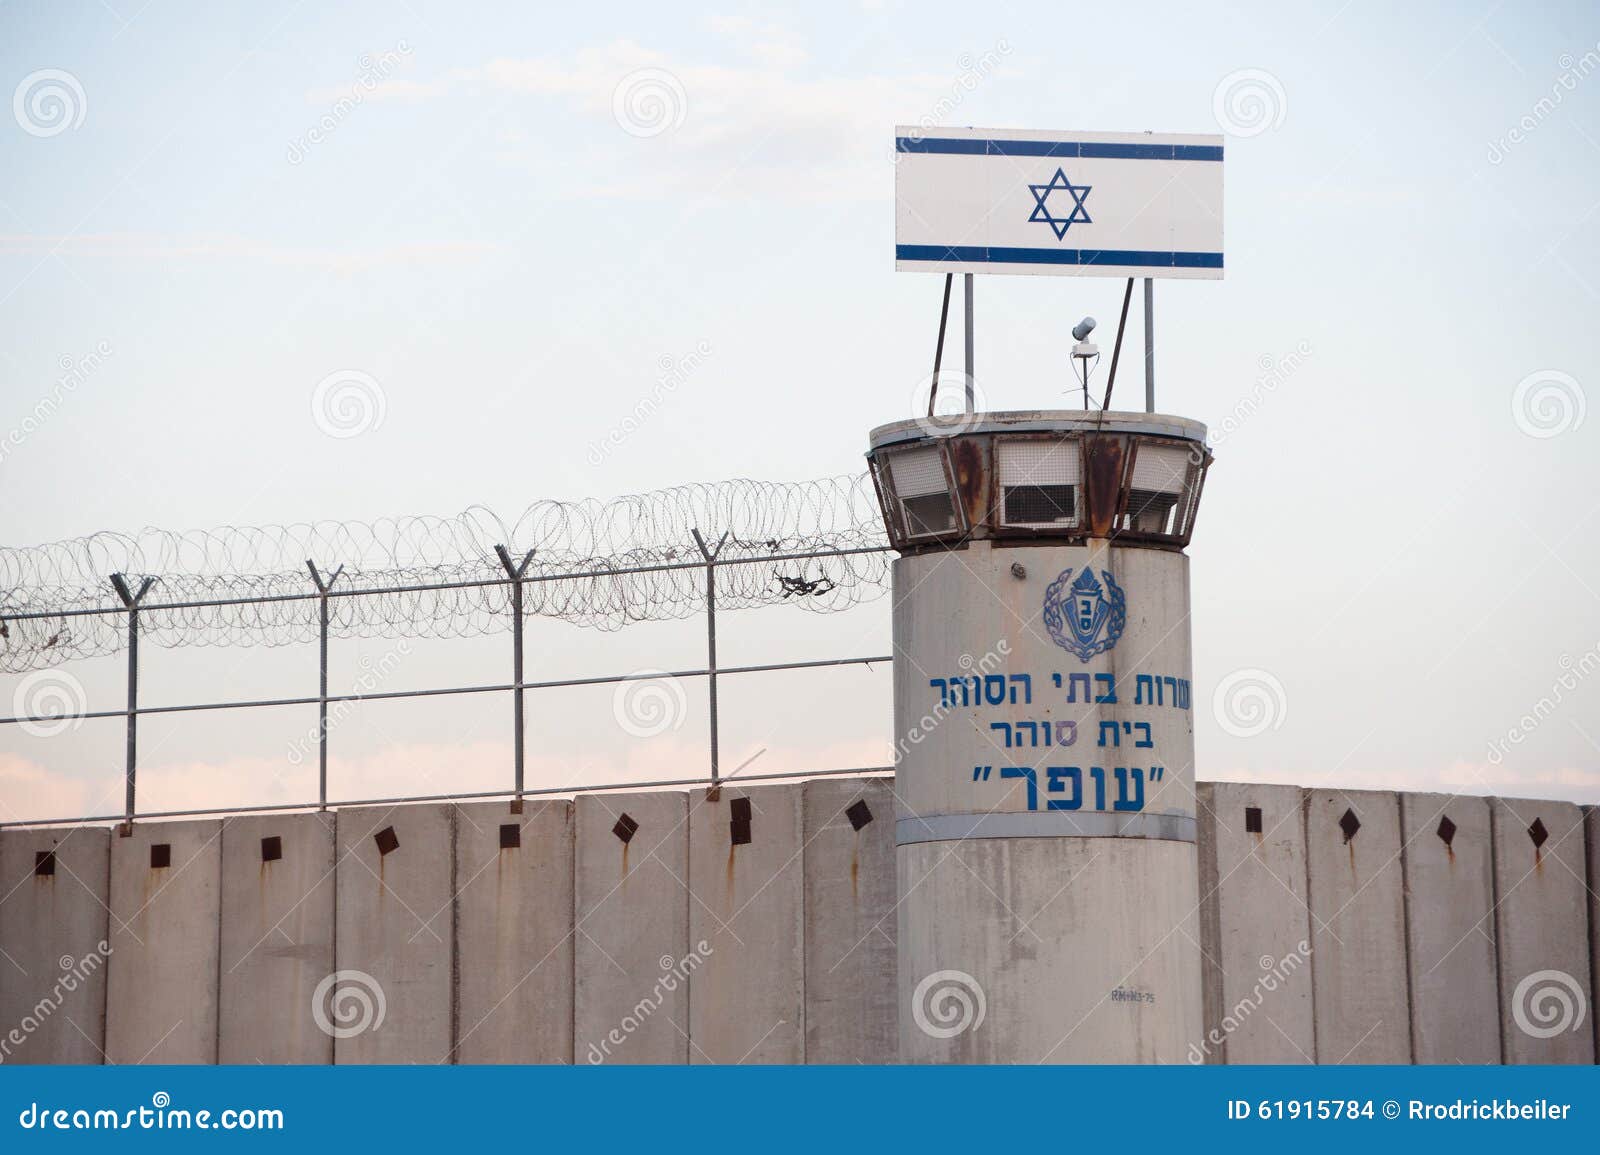 以色列监狱在约旦河西岸. 在以色列的Ofer军事监狱的一座城楼在被占领的巴勒斯坦领土在约旦河西岸， 2013年11月22日站立